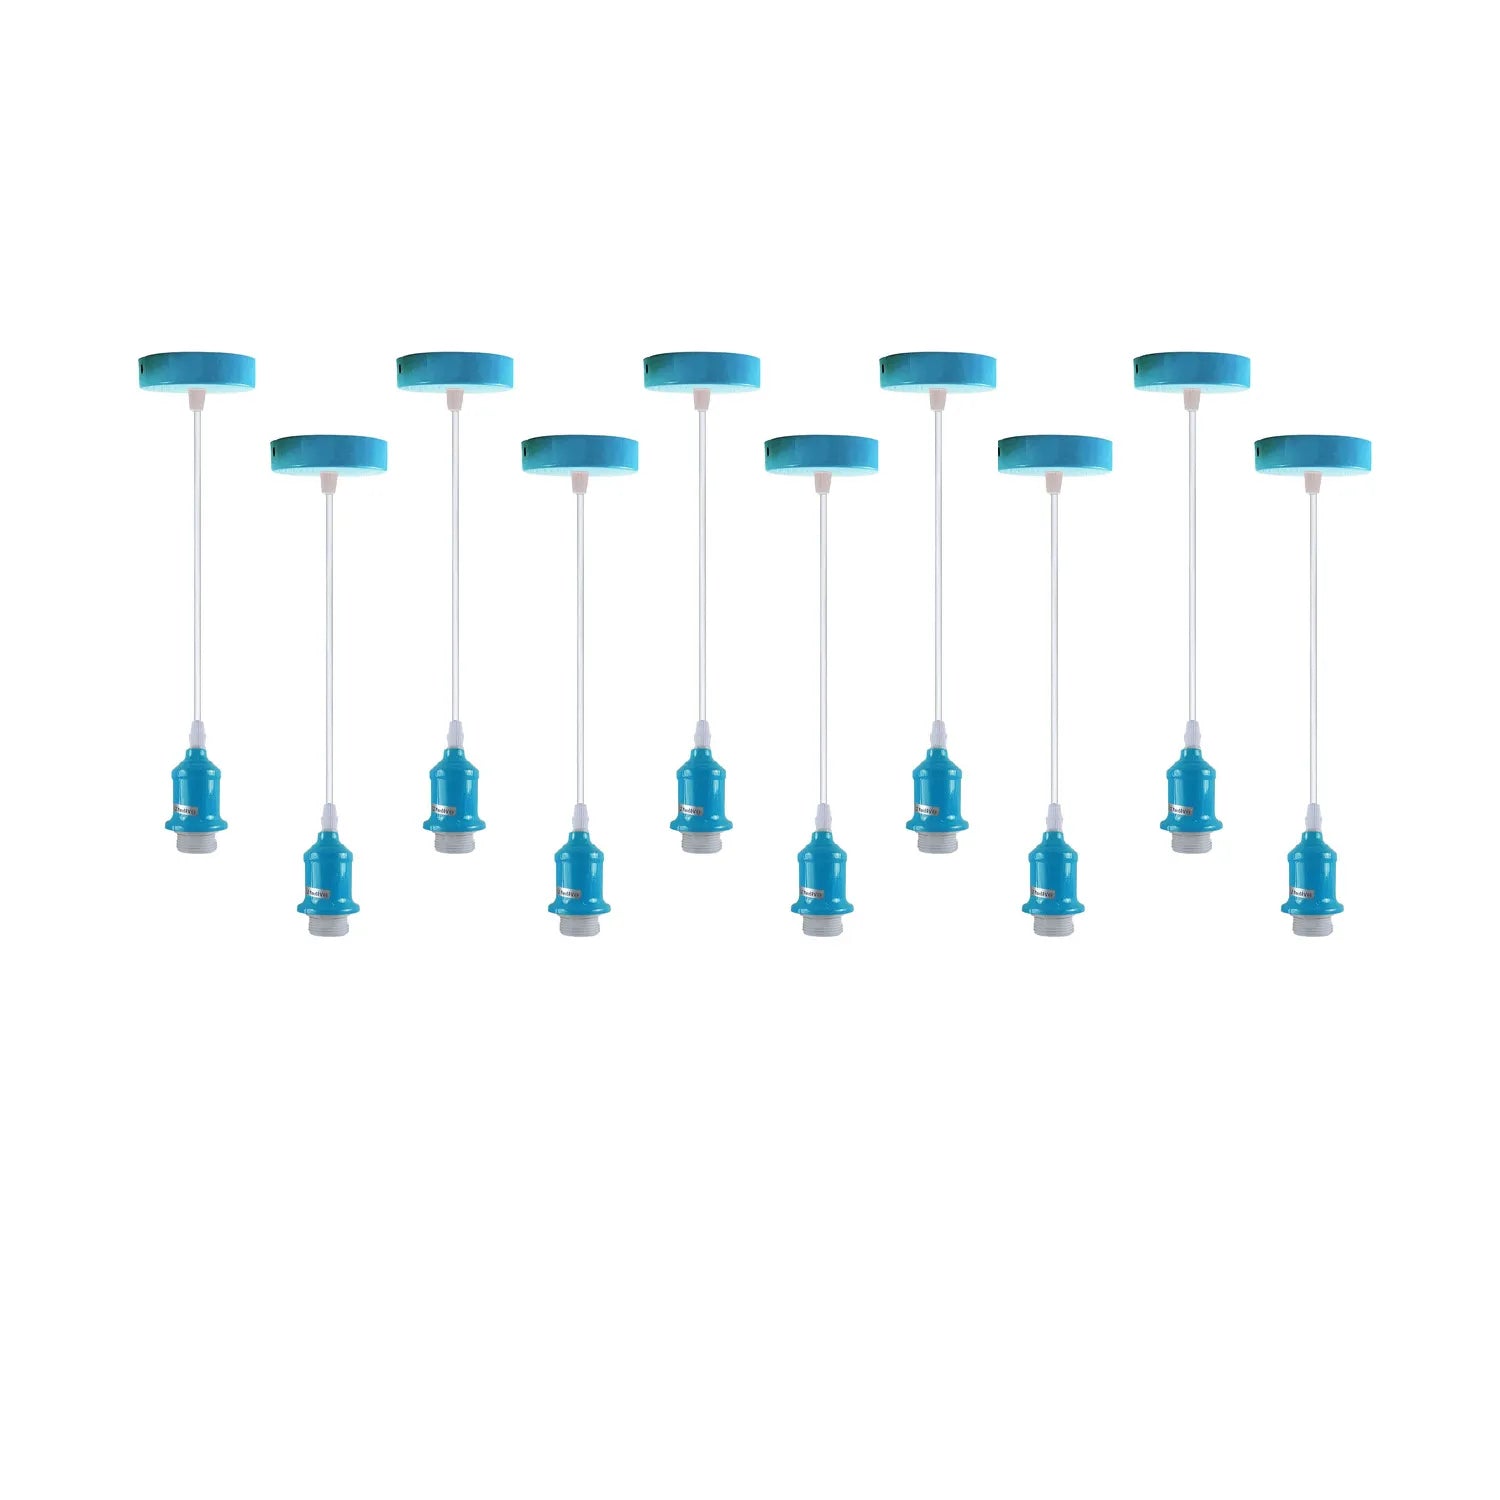 10 Pack Industrial Pendant Light Fitting,Lamp Holder Ceiling Hanging Light~4271